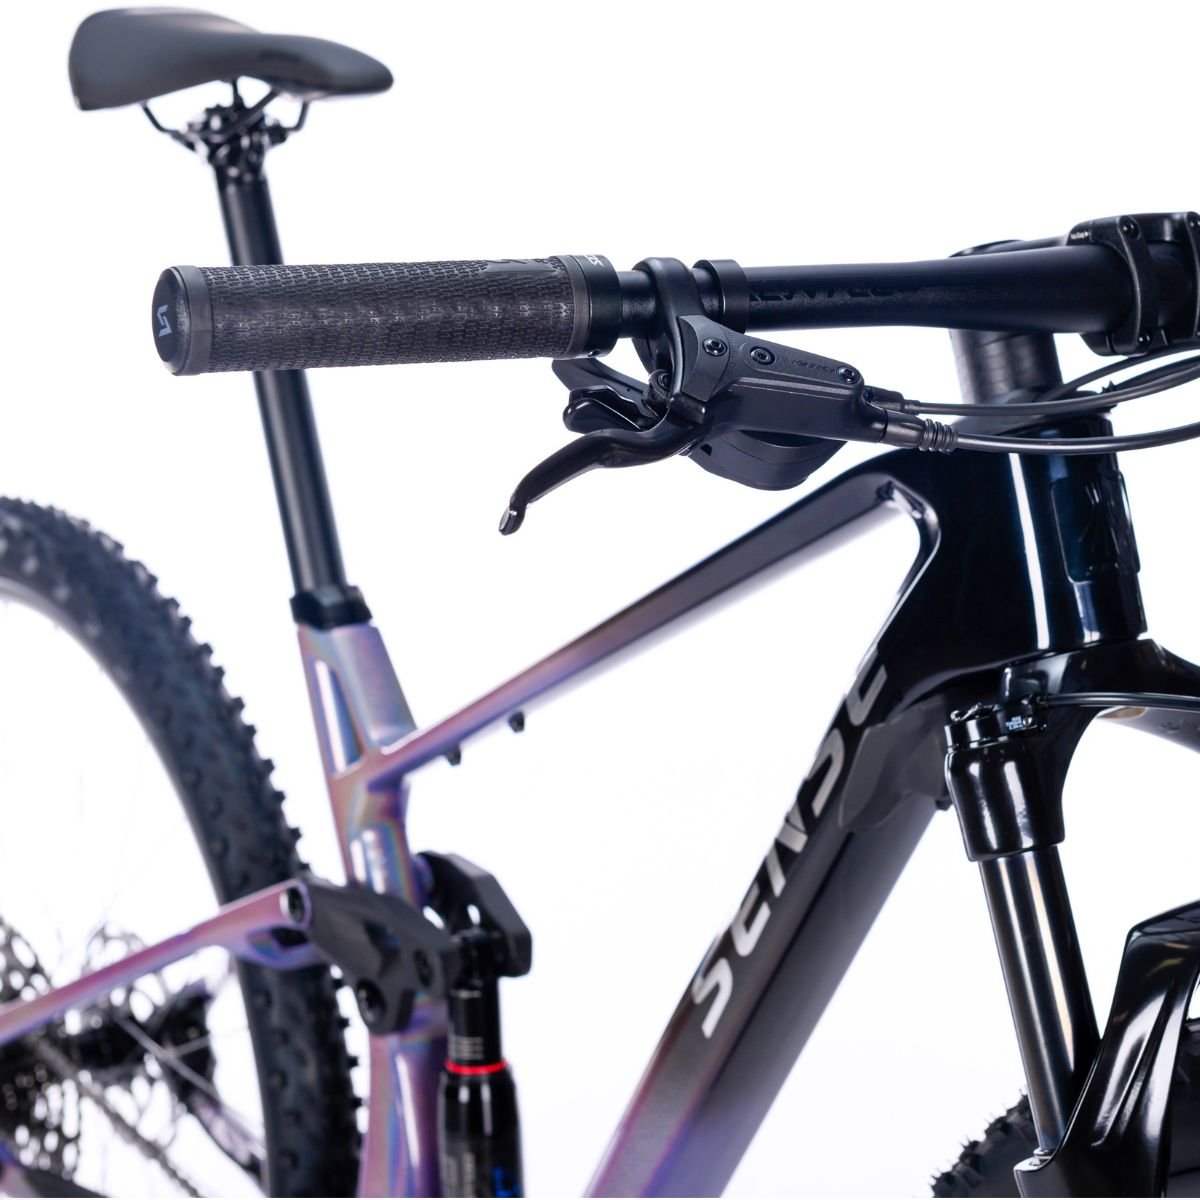 Bicicleta Full Sense Invictus Sport Carbono Shimano Cues:roxo+preto/17 - 4